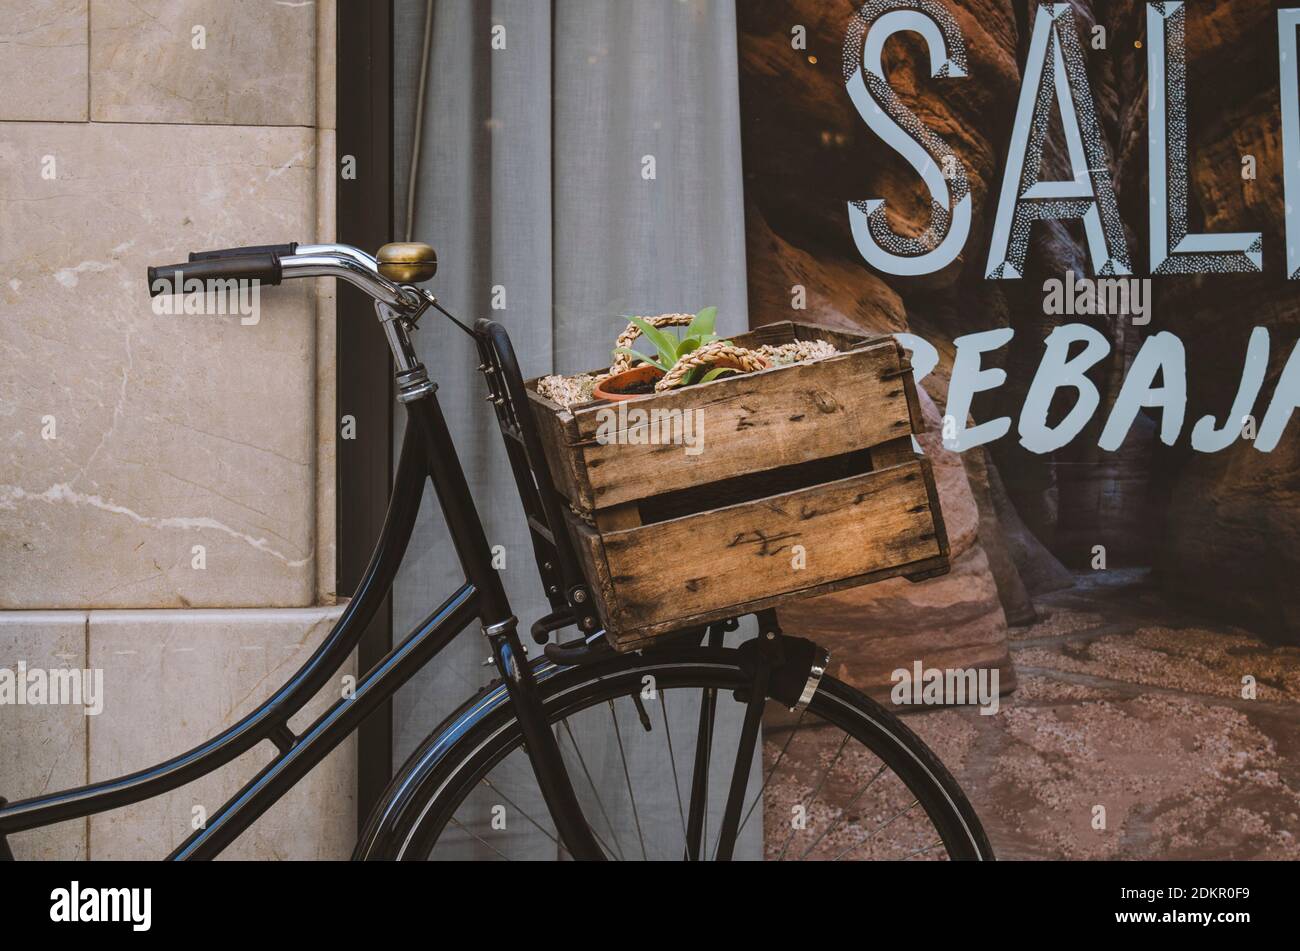 Fahrrad Mit Holzkorb Gegen Schaufenster Stockfotografie - Alamy